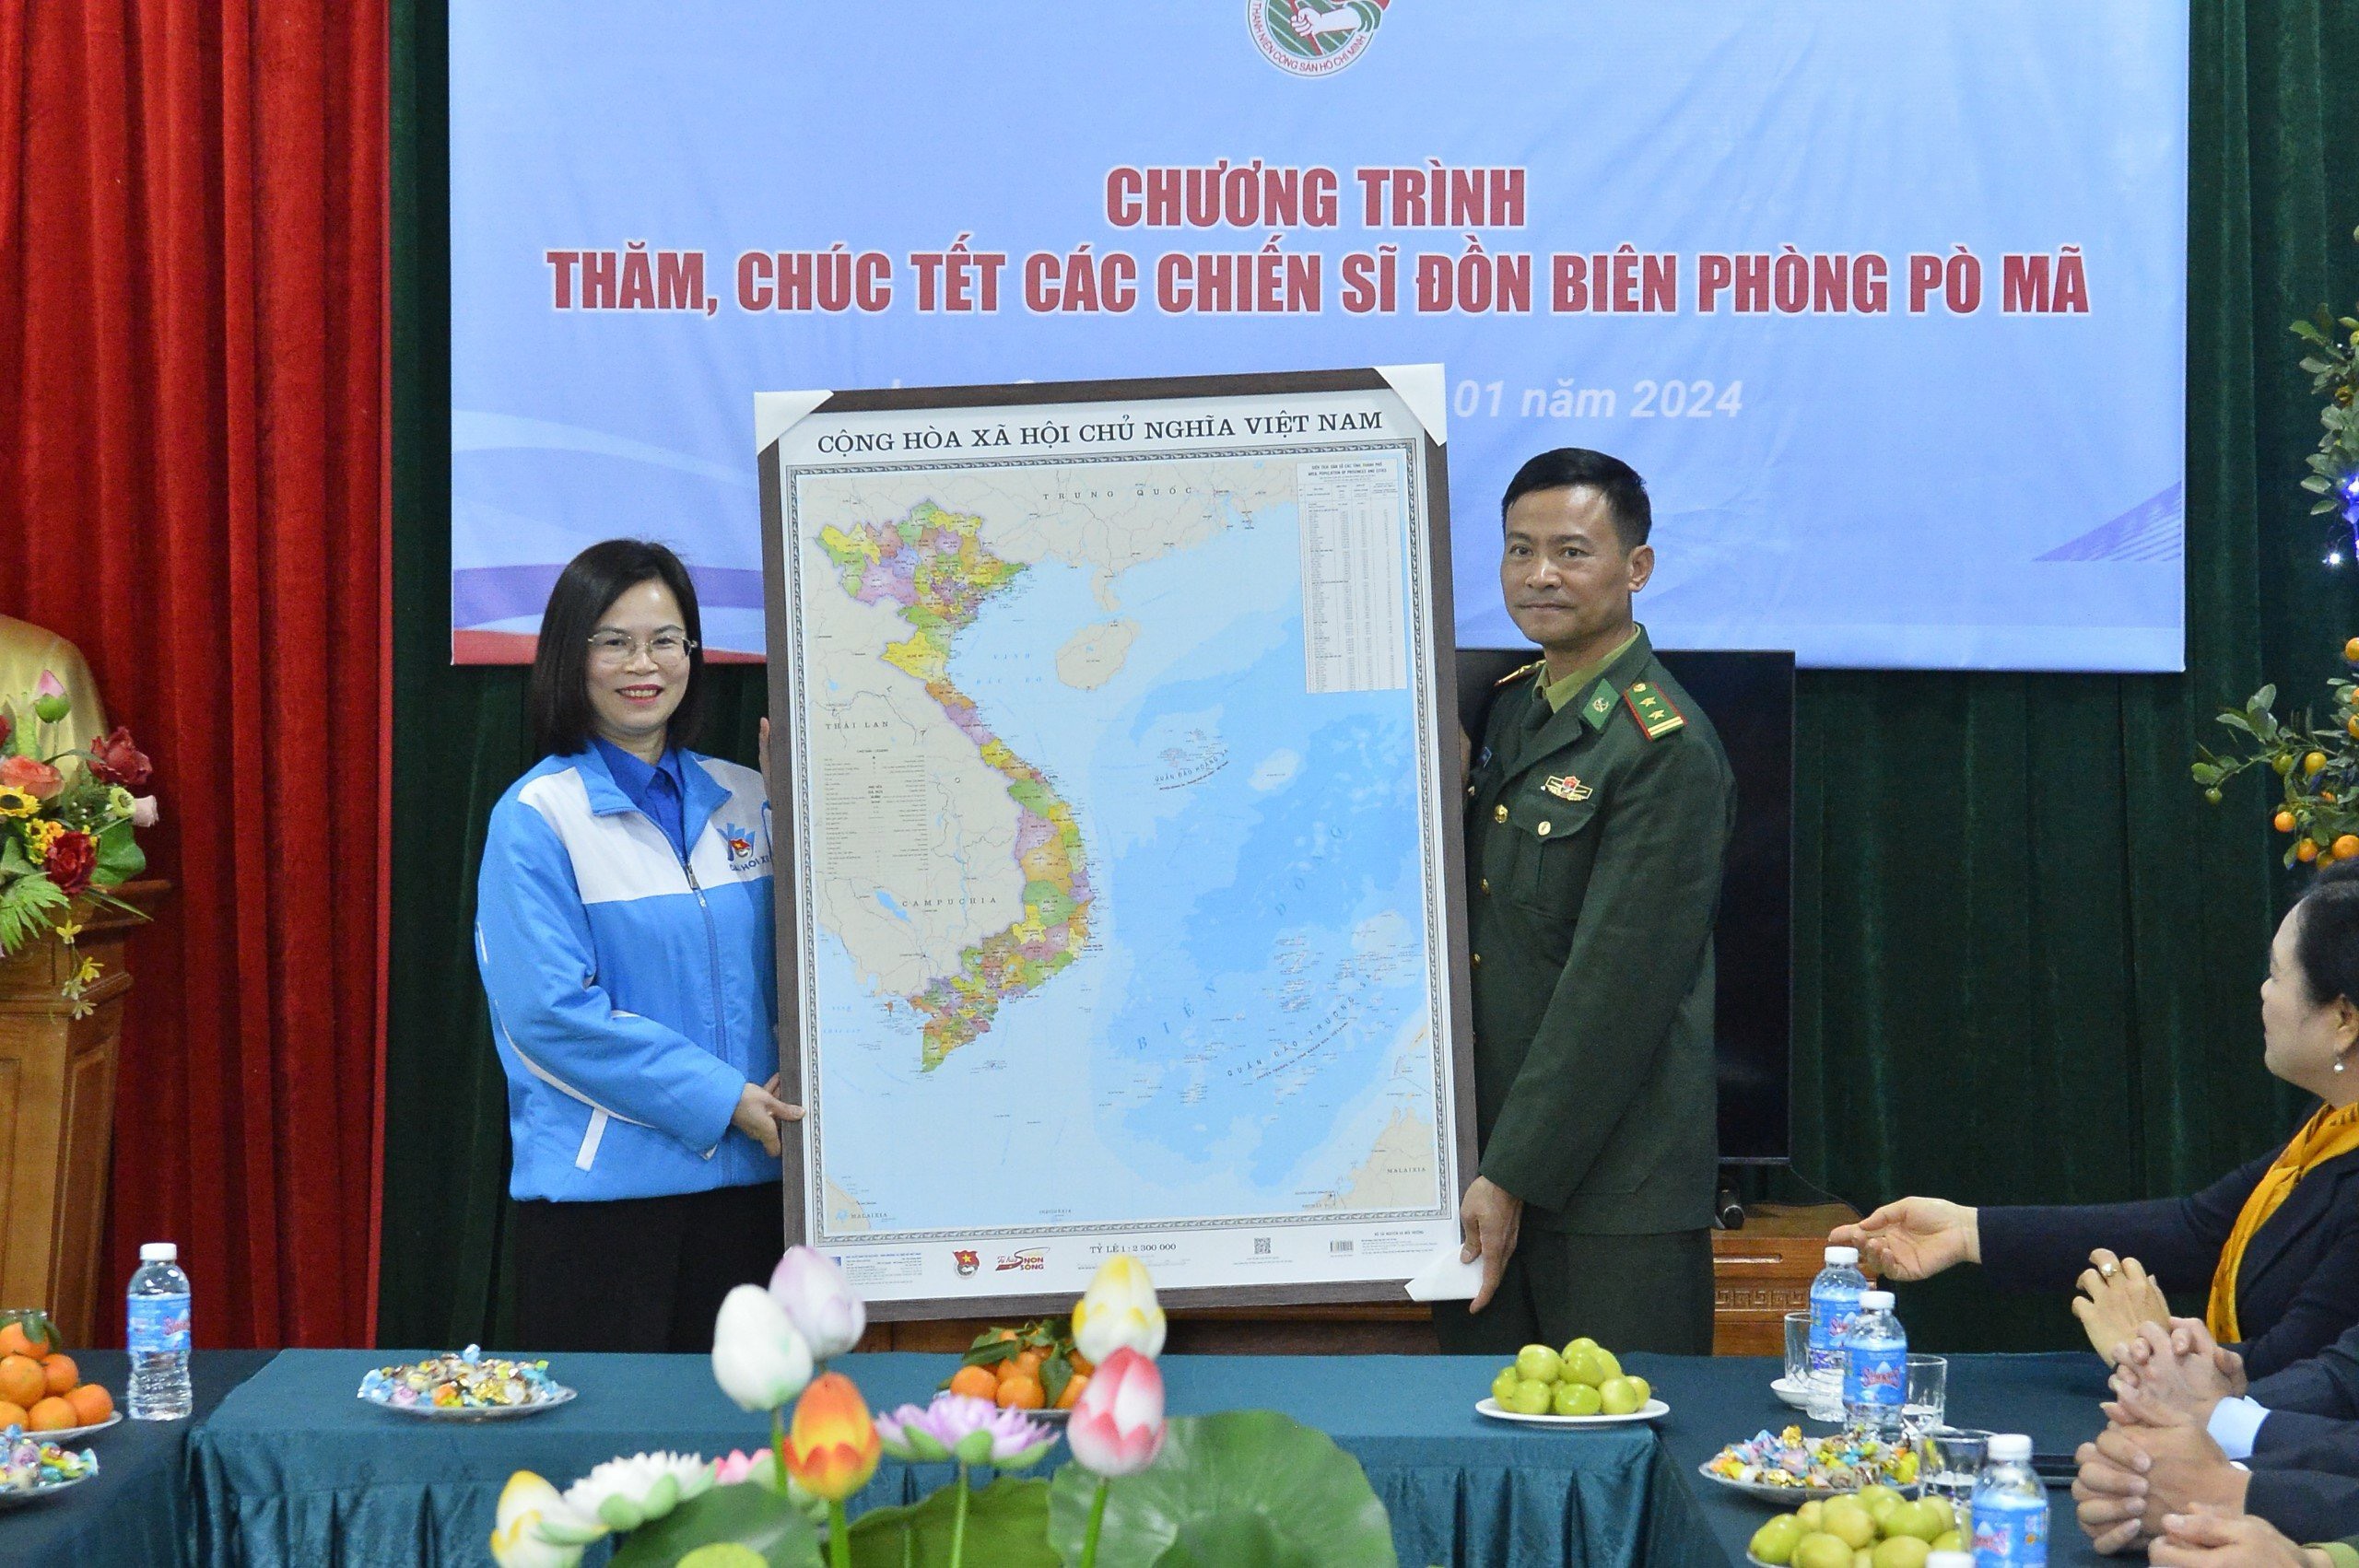 Đồng chí Hoàng Thị Minh Thu, Ủy viên BTV Trung ương Đoàn, Ủy viên BCH Đảng bộ Khối, Bí thư Đoàn Khối DNTW  trao tặng bản đồ Việt Nam cho Đồn Biên phòng Pò Mã